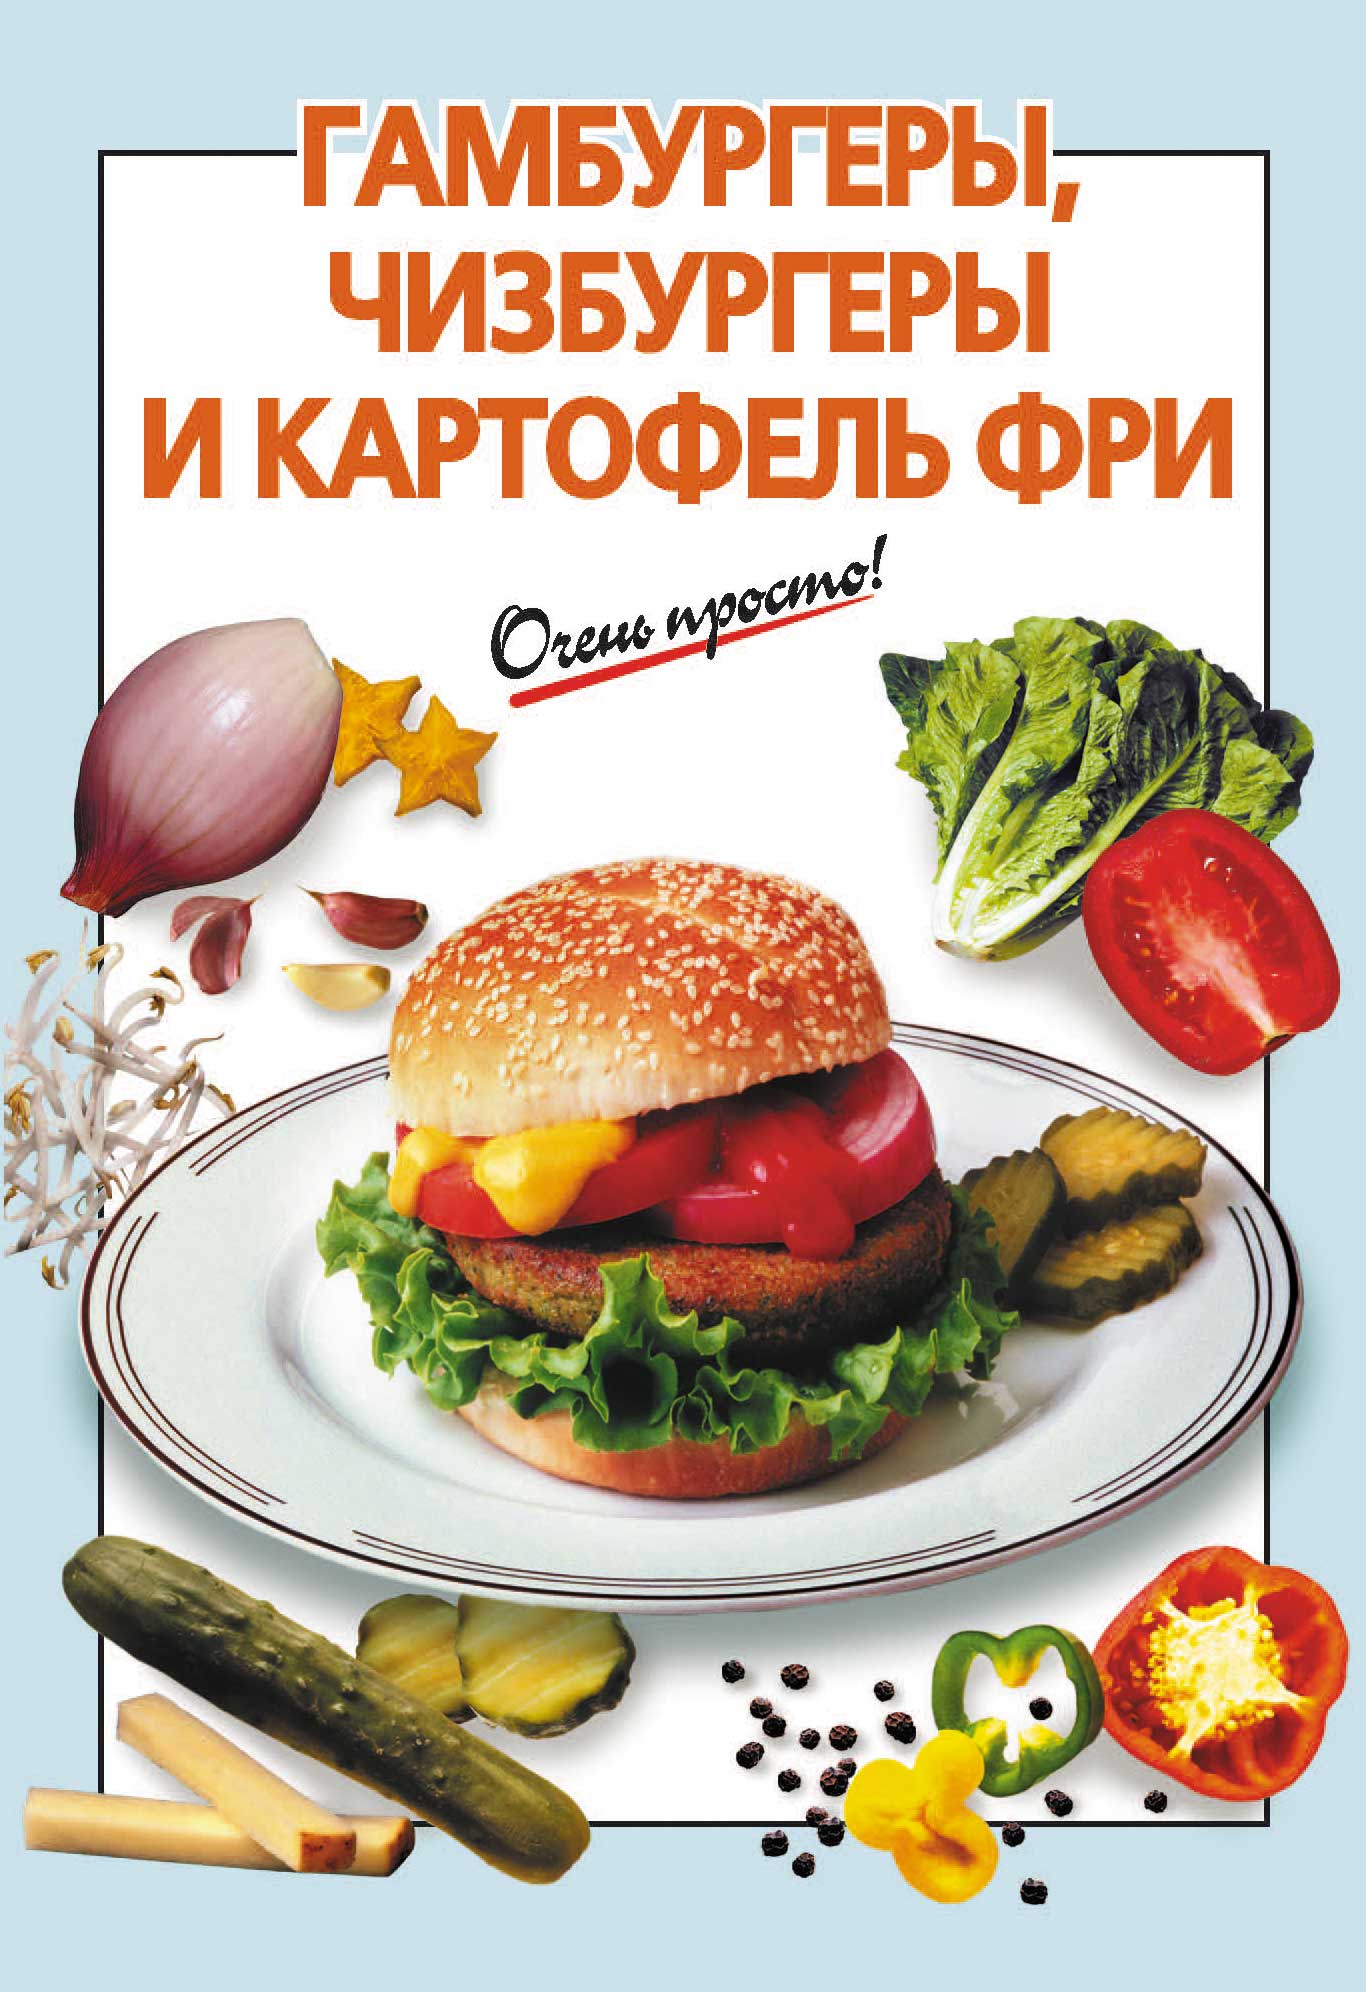 Книга Гамбургеры, чизбургеры и картофель фри из серии , созданная Г. Выдревич, может относится к жанру Кулинария. Стоимость электронной книги Гамбургеры, чизбургеры и картофель фри с идентификатором 6882131 составляет 29.95 руб.